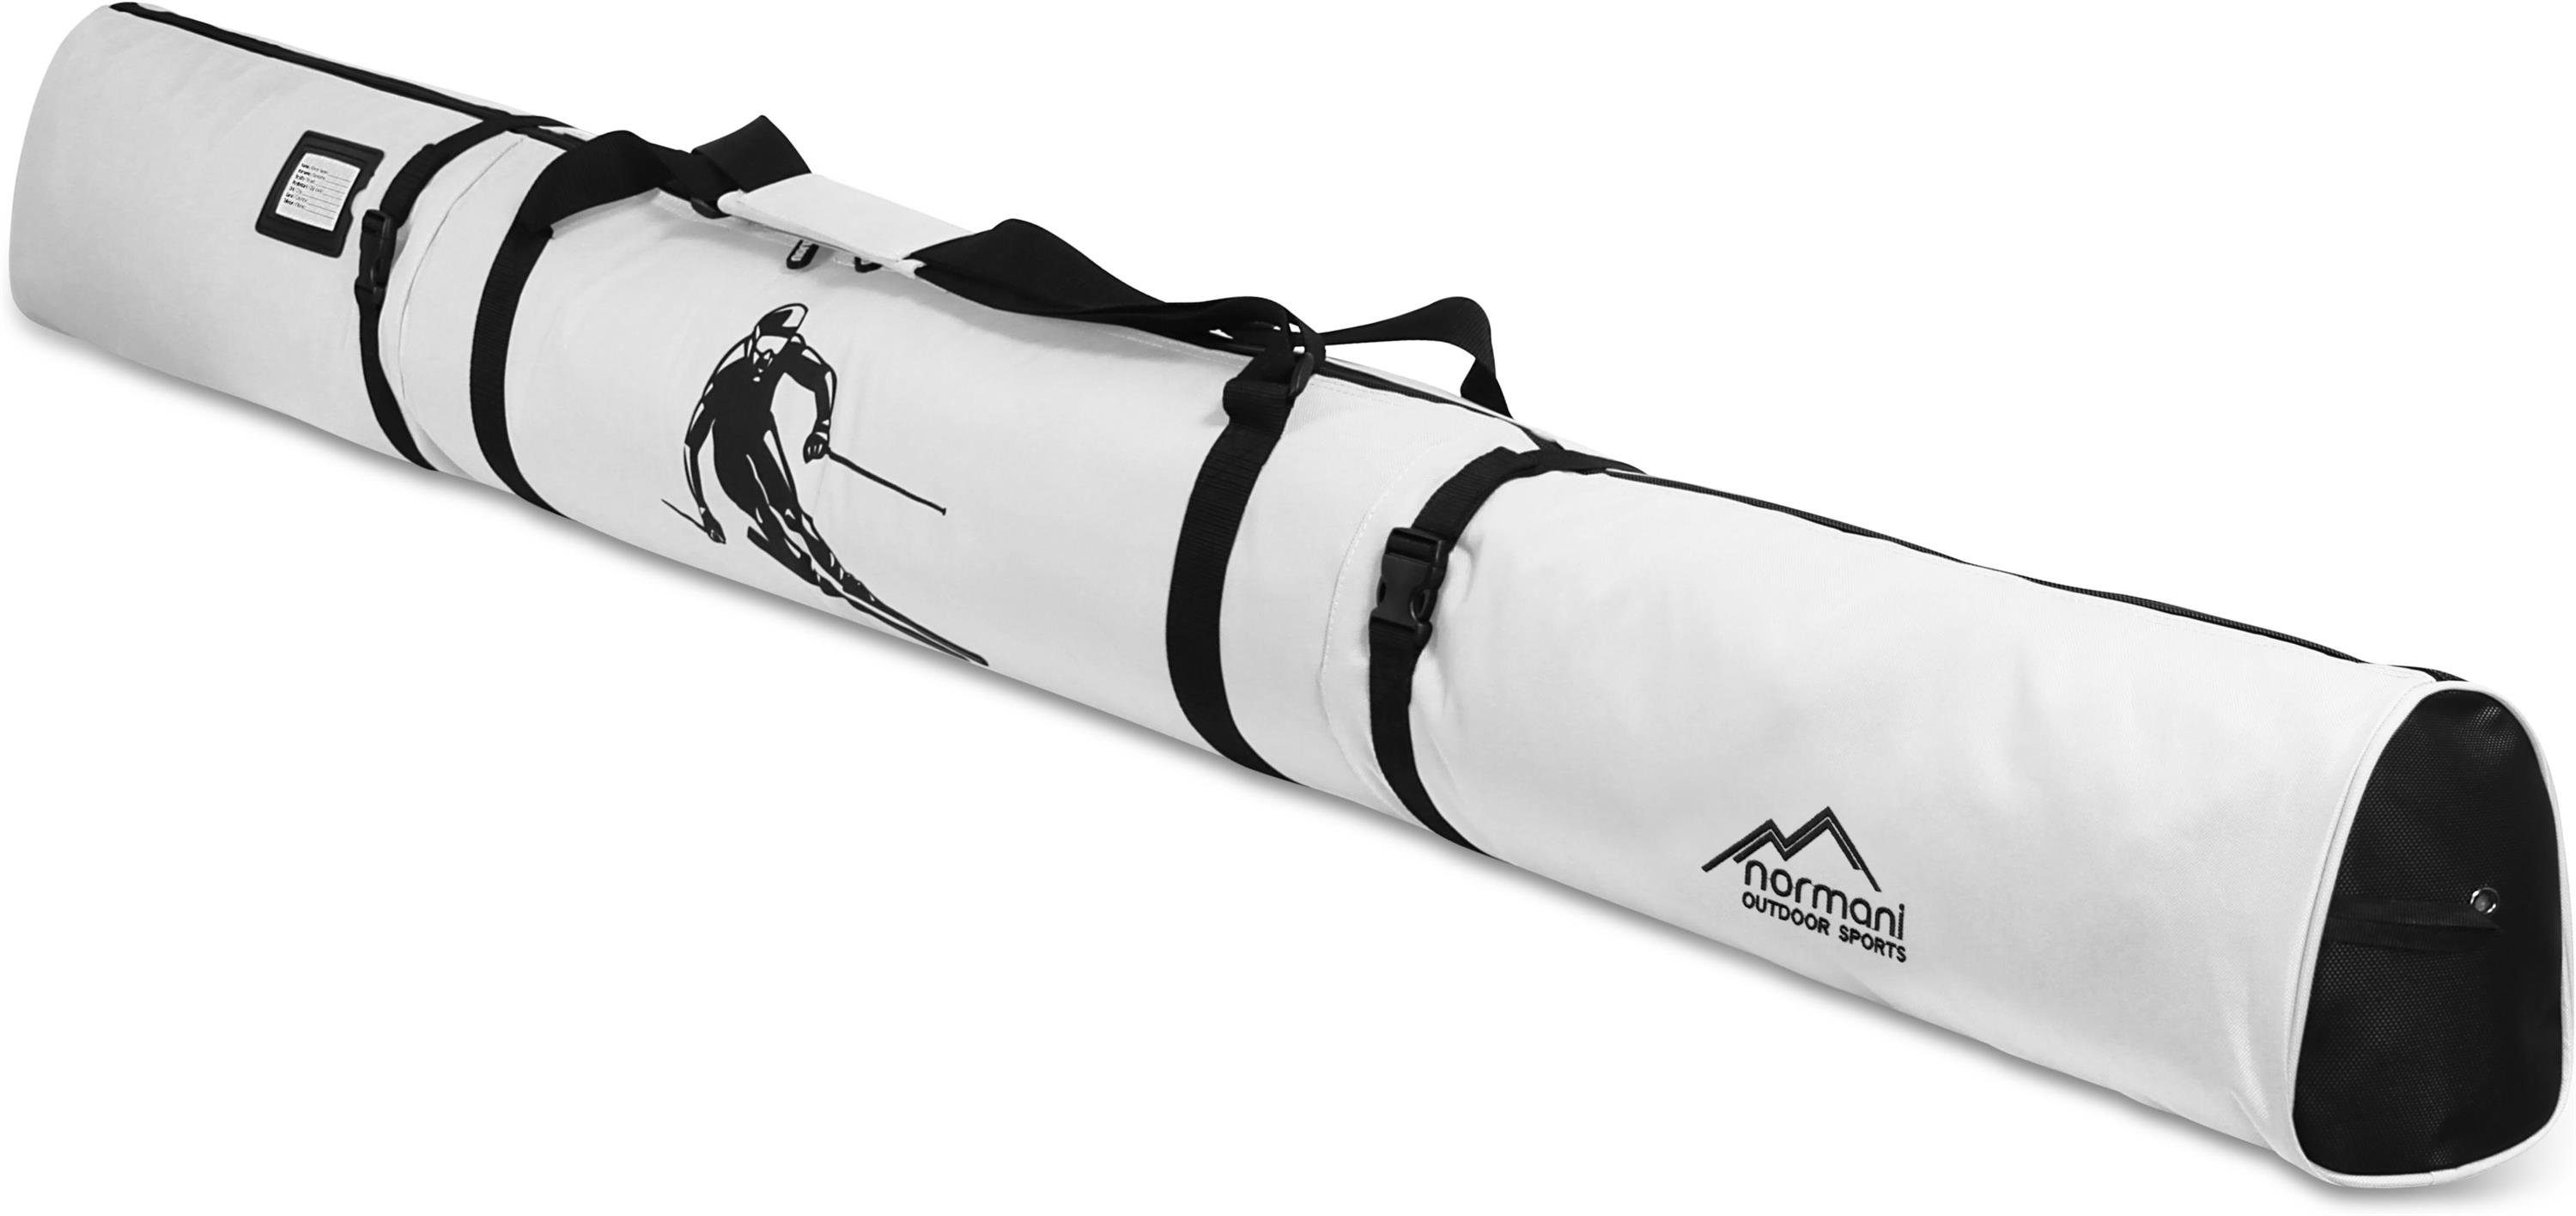 normani Sporttasche Skitasche Alpine Run 200, Skisack - Skitasche für Skier und Skistöcke Transporttasche Aufbewahrungstasche Weiß